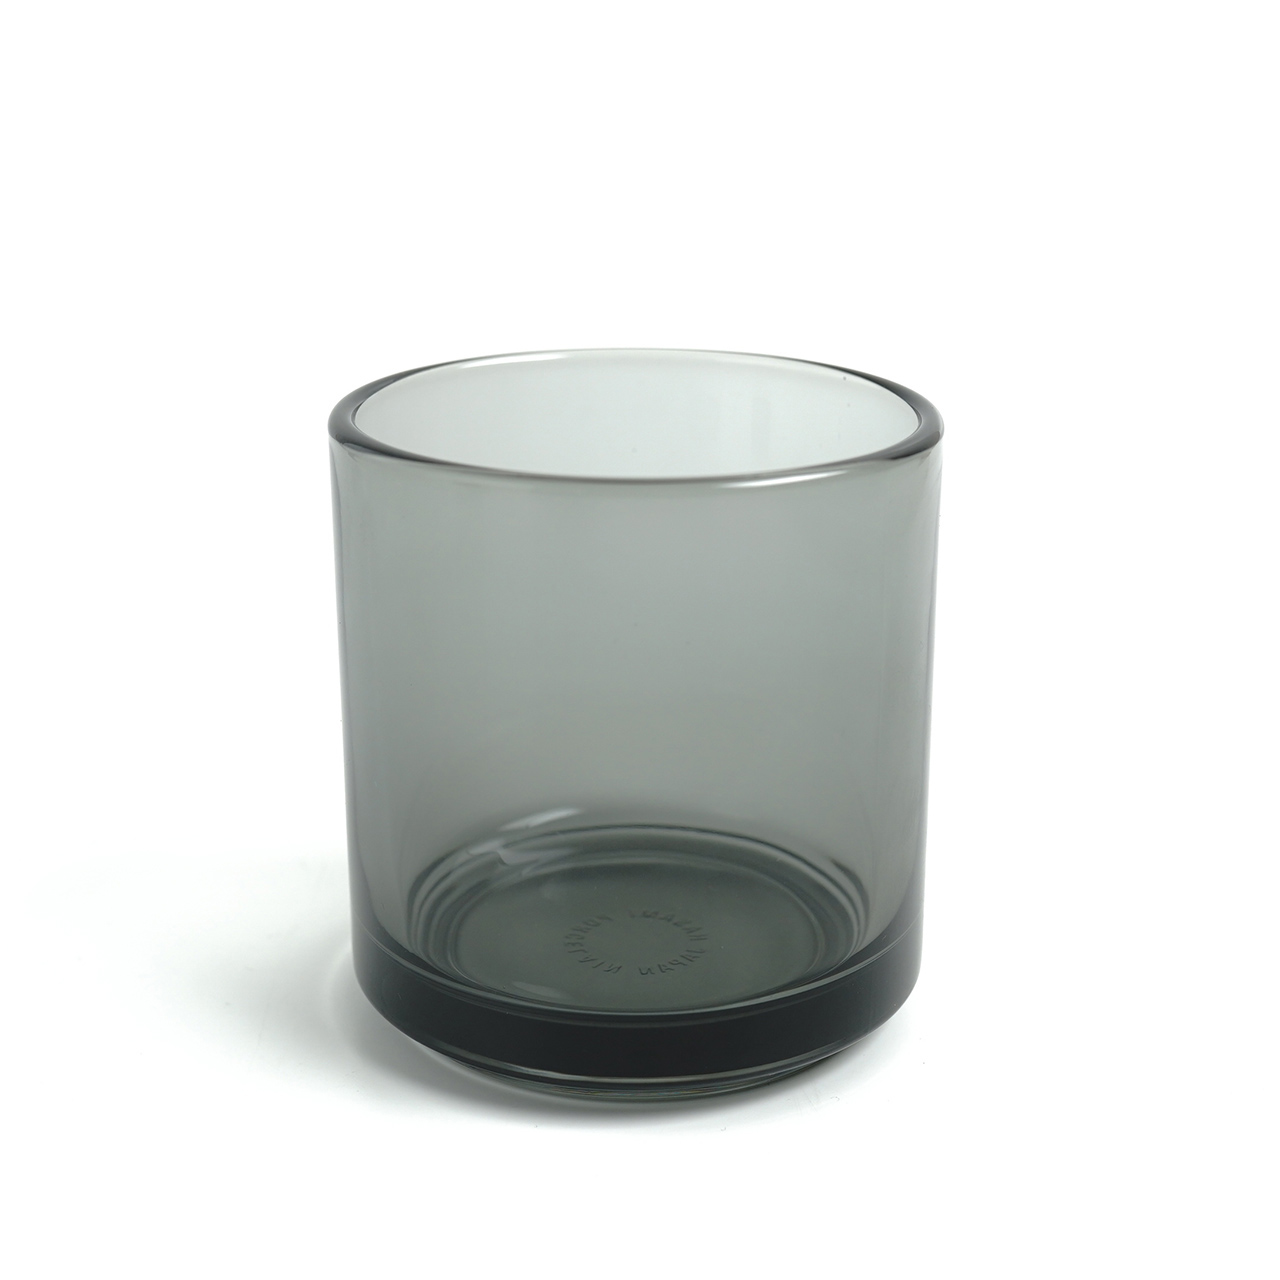 ハサミポーセリン HASAMI PORCELAIN タンブラー TUMBLER 同色3個セット ガラス グラス 350ml 日本製 西海陶器 クリア グレー アンバー 透明 灰 茶 レディース メンズ HPGLC HPGLM HPGLA　0707